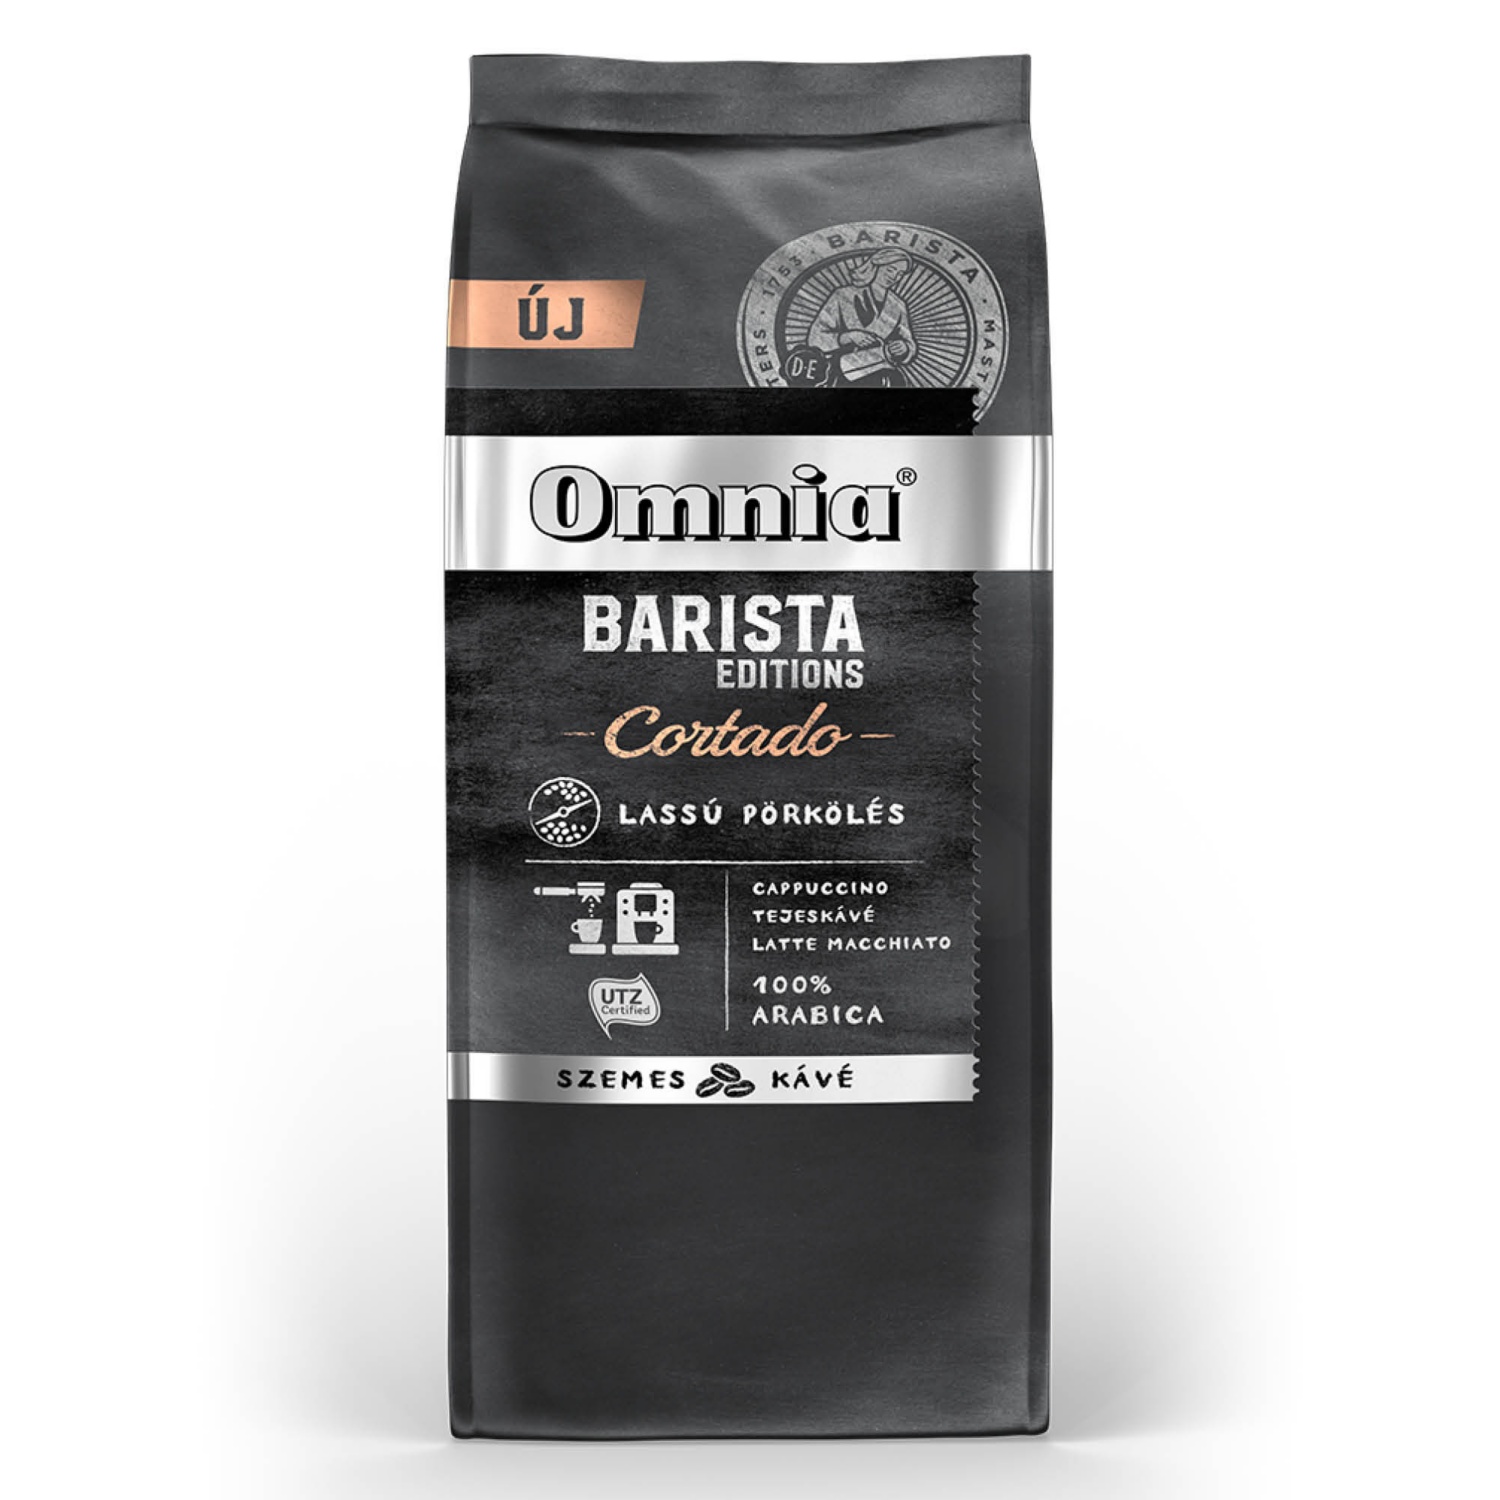 DOUWE EGBERTS Omnia Barista szemes kávé 900 g, Cortado